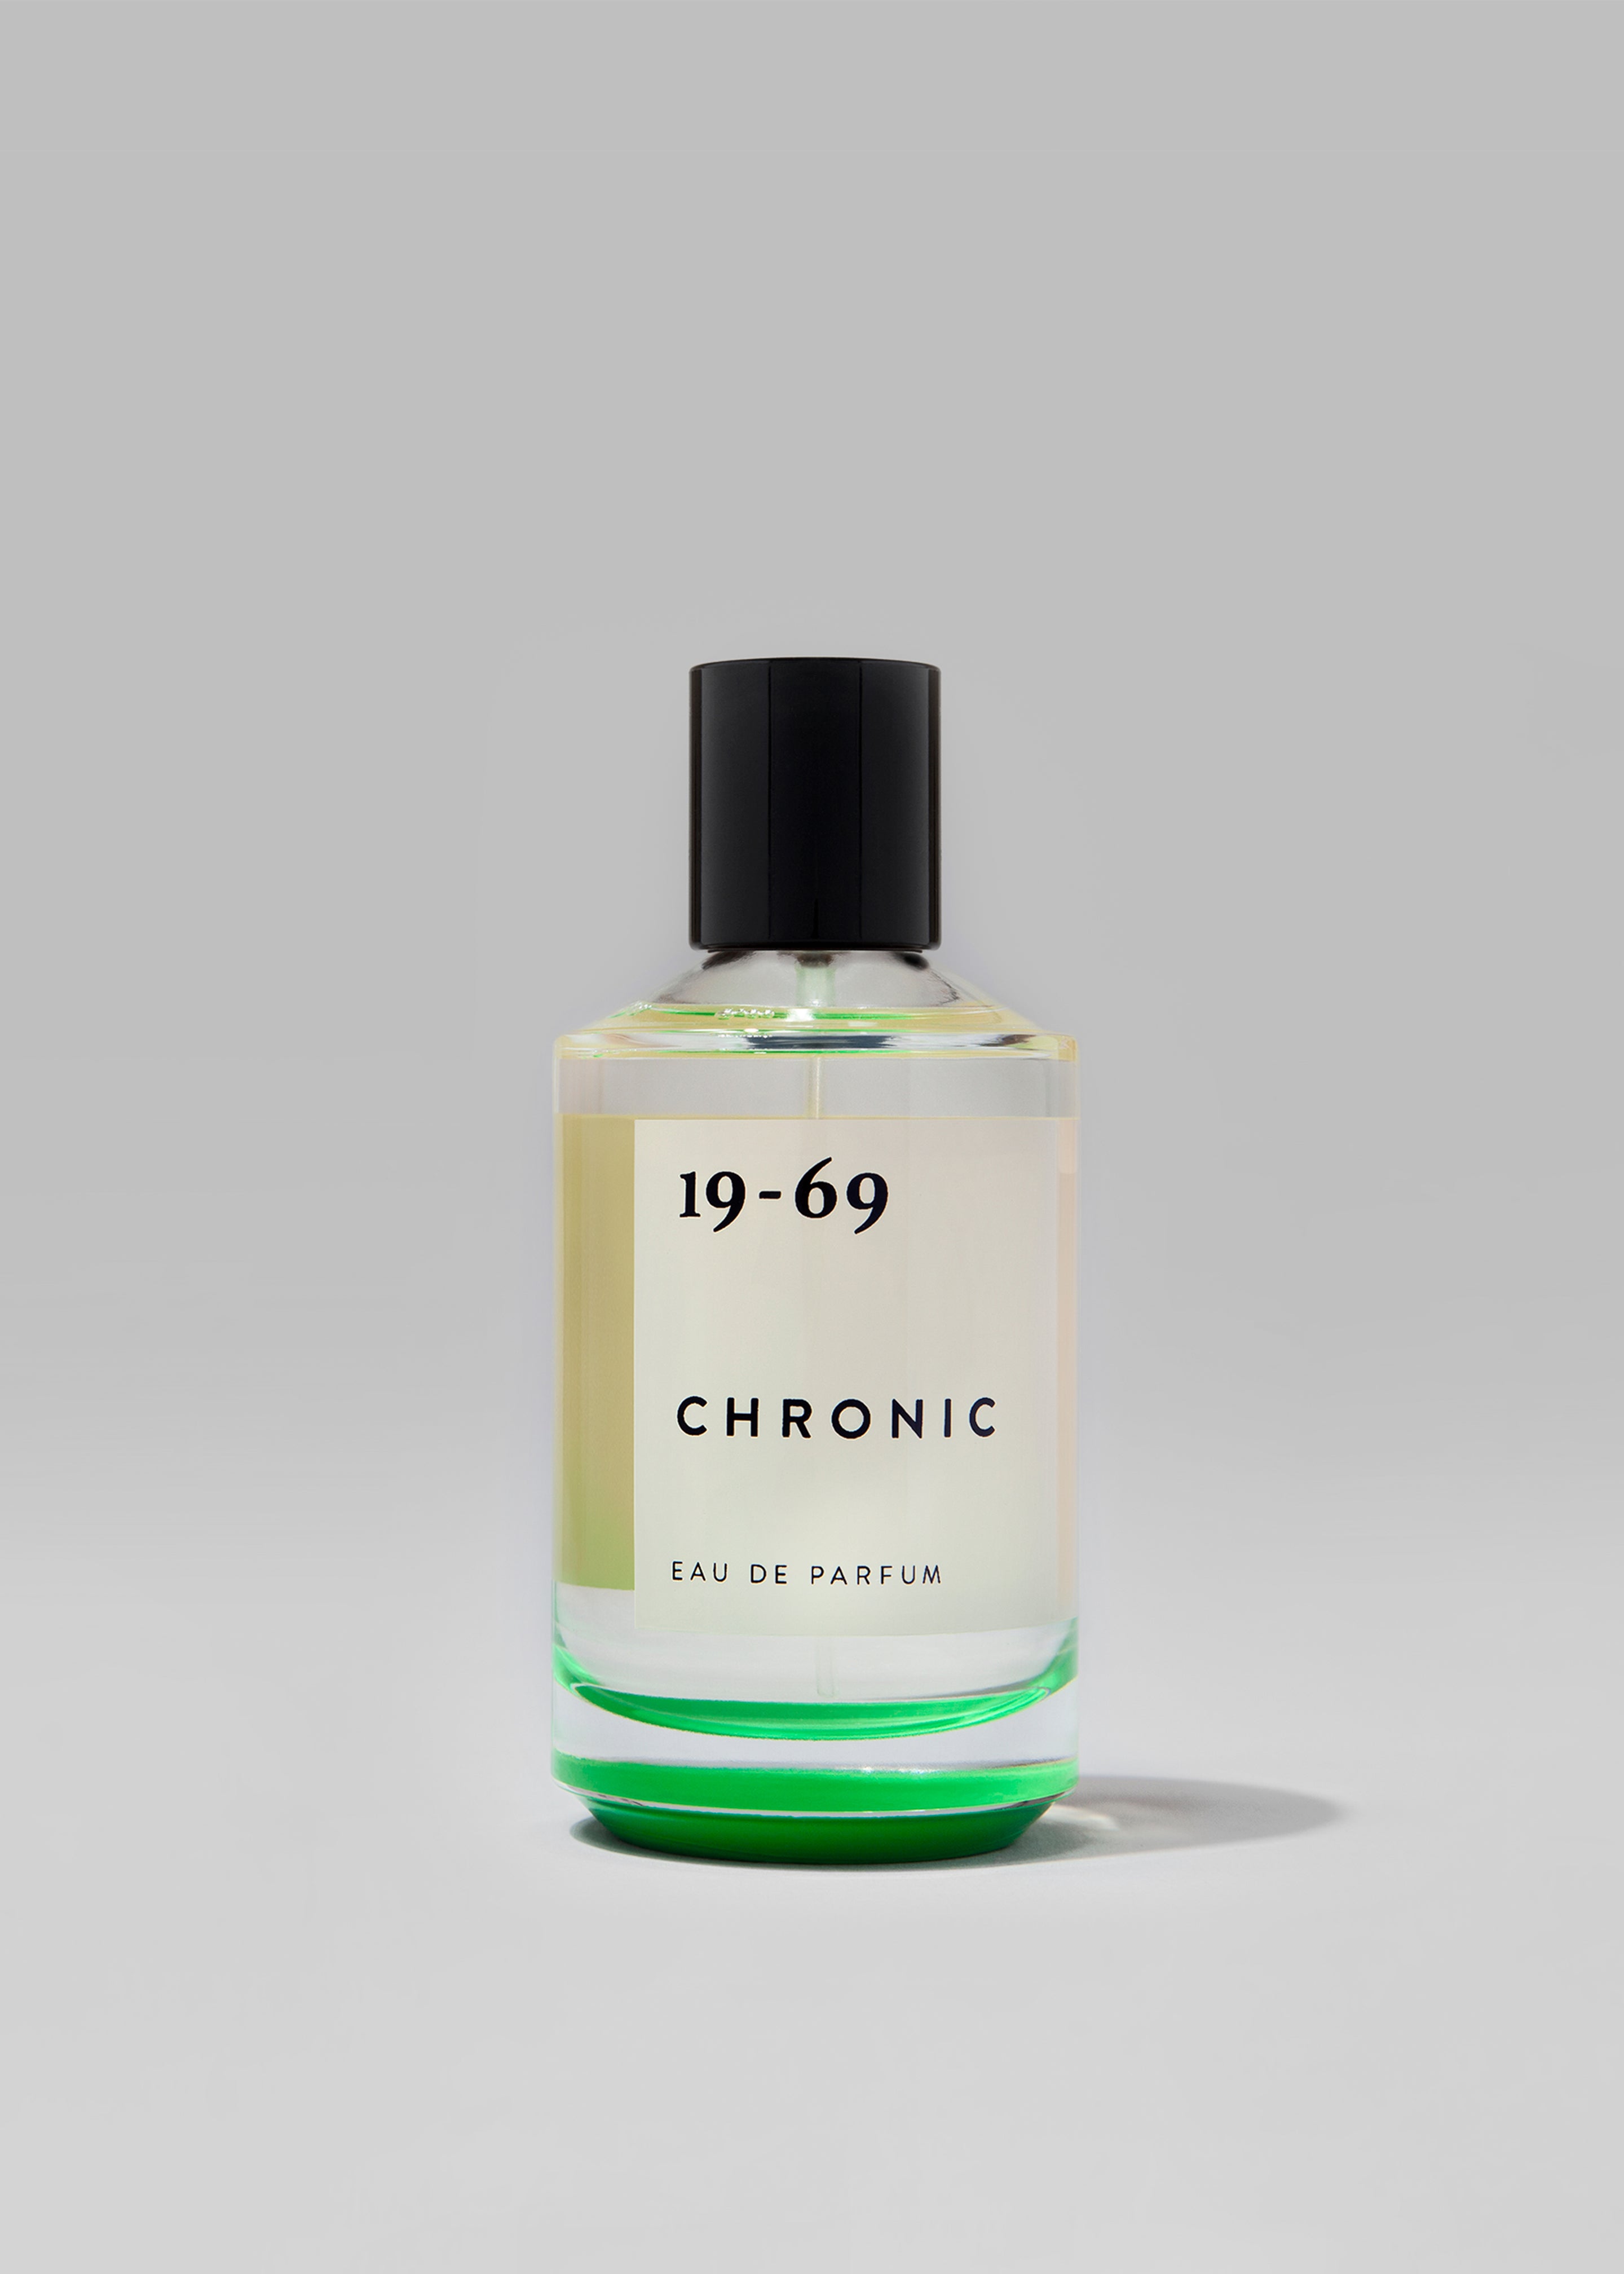 19-69 Chronic Eau de Parfum - 1